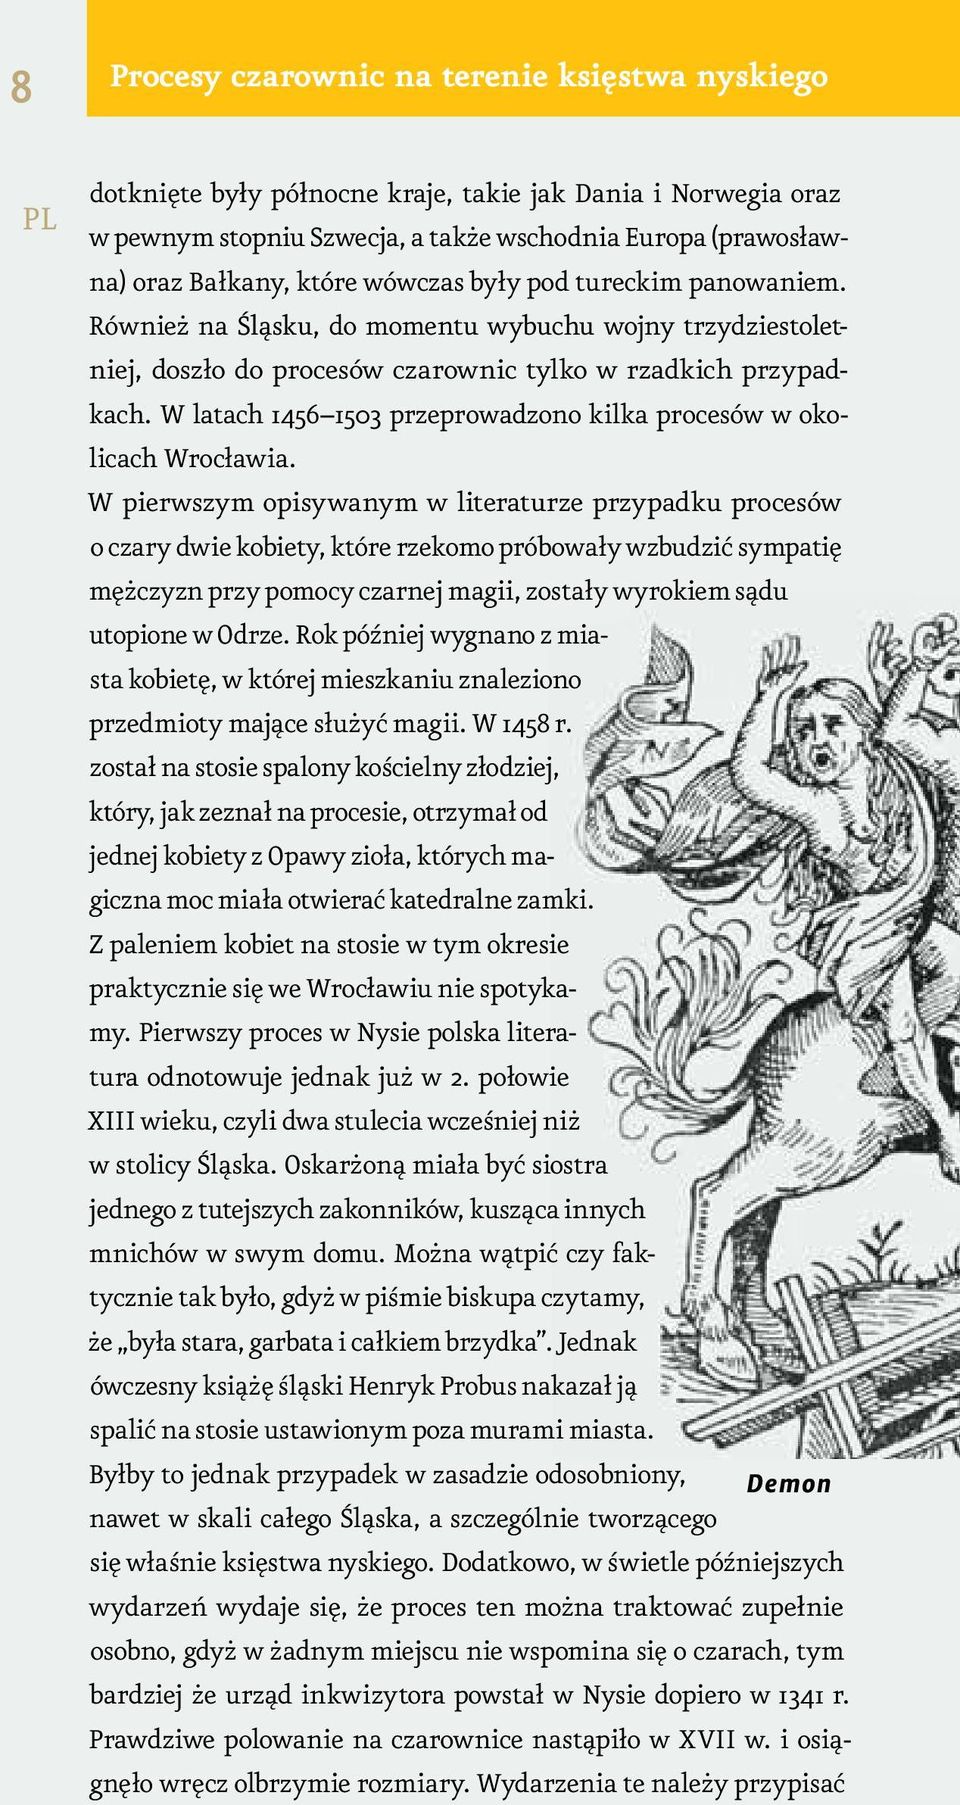 W latach 1456 1503 przeprowadzono kilka procesów w okolicach Wrocławia.